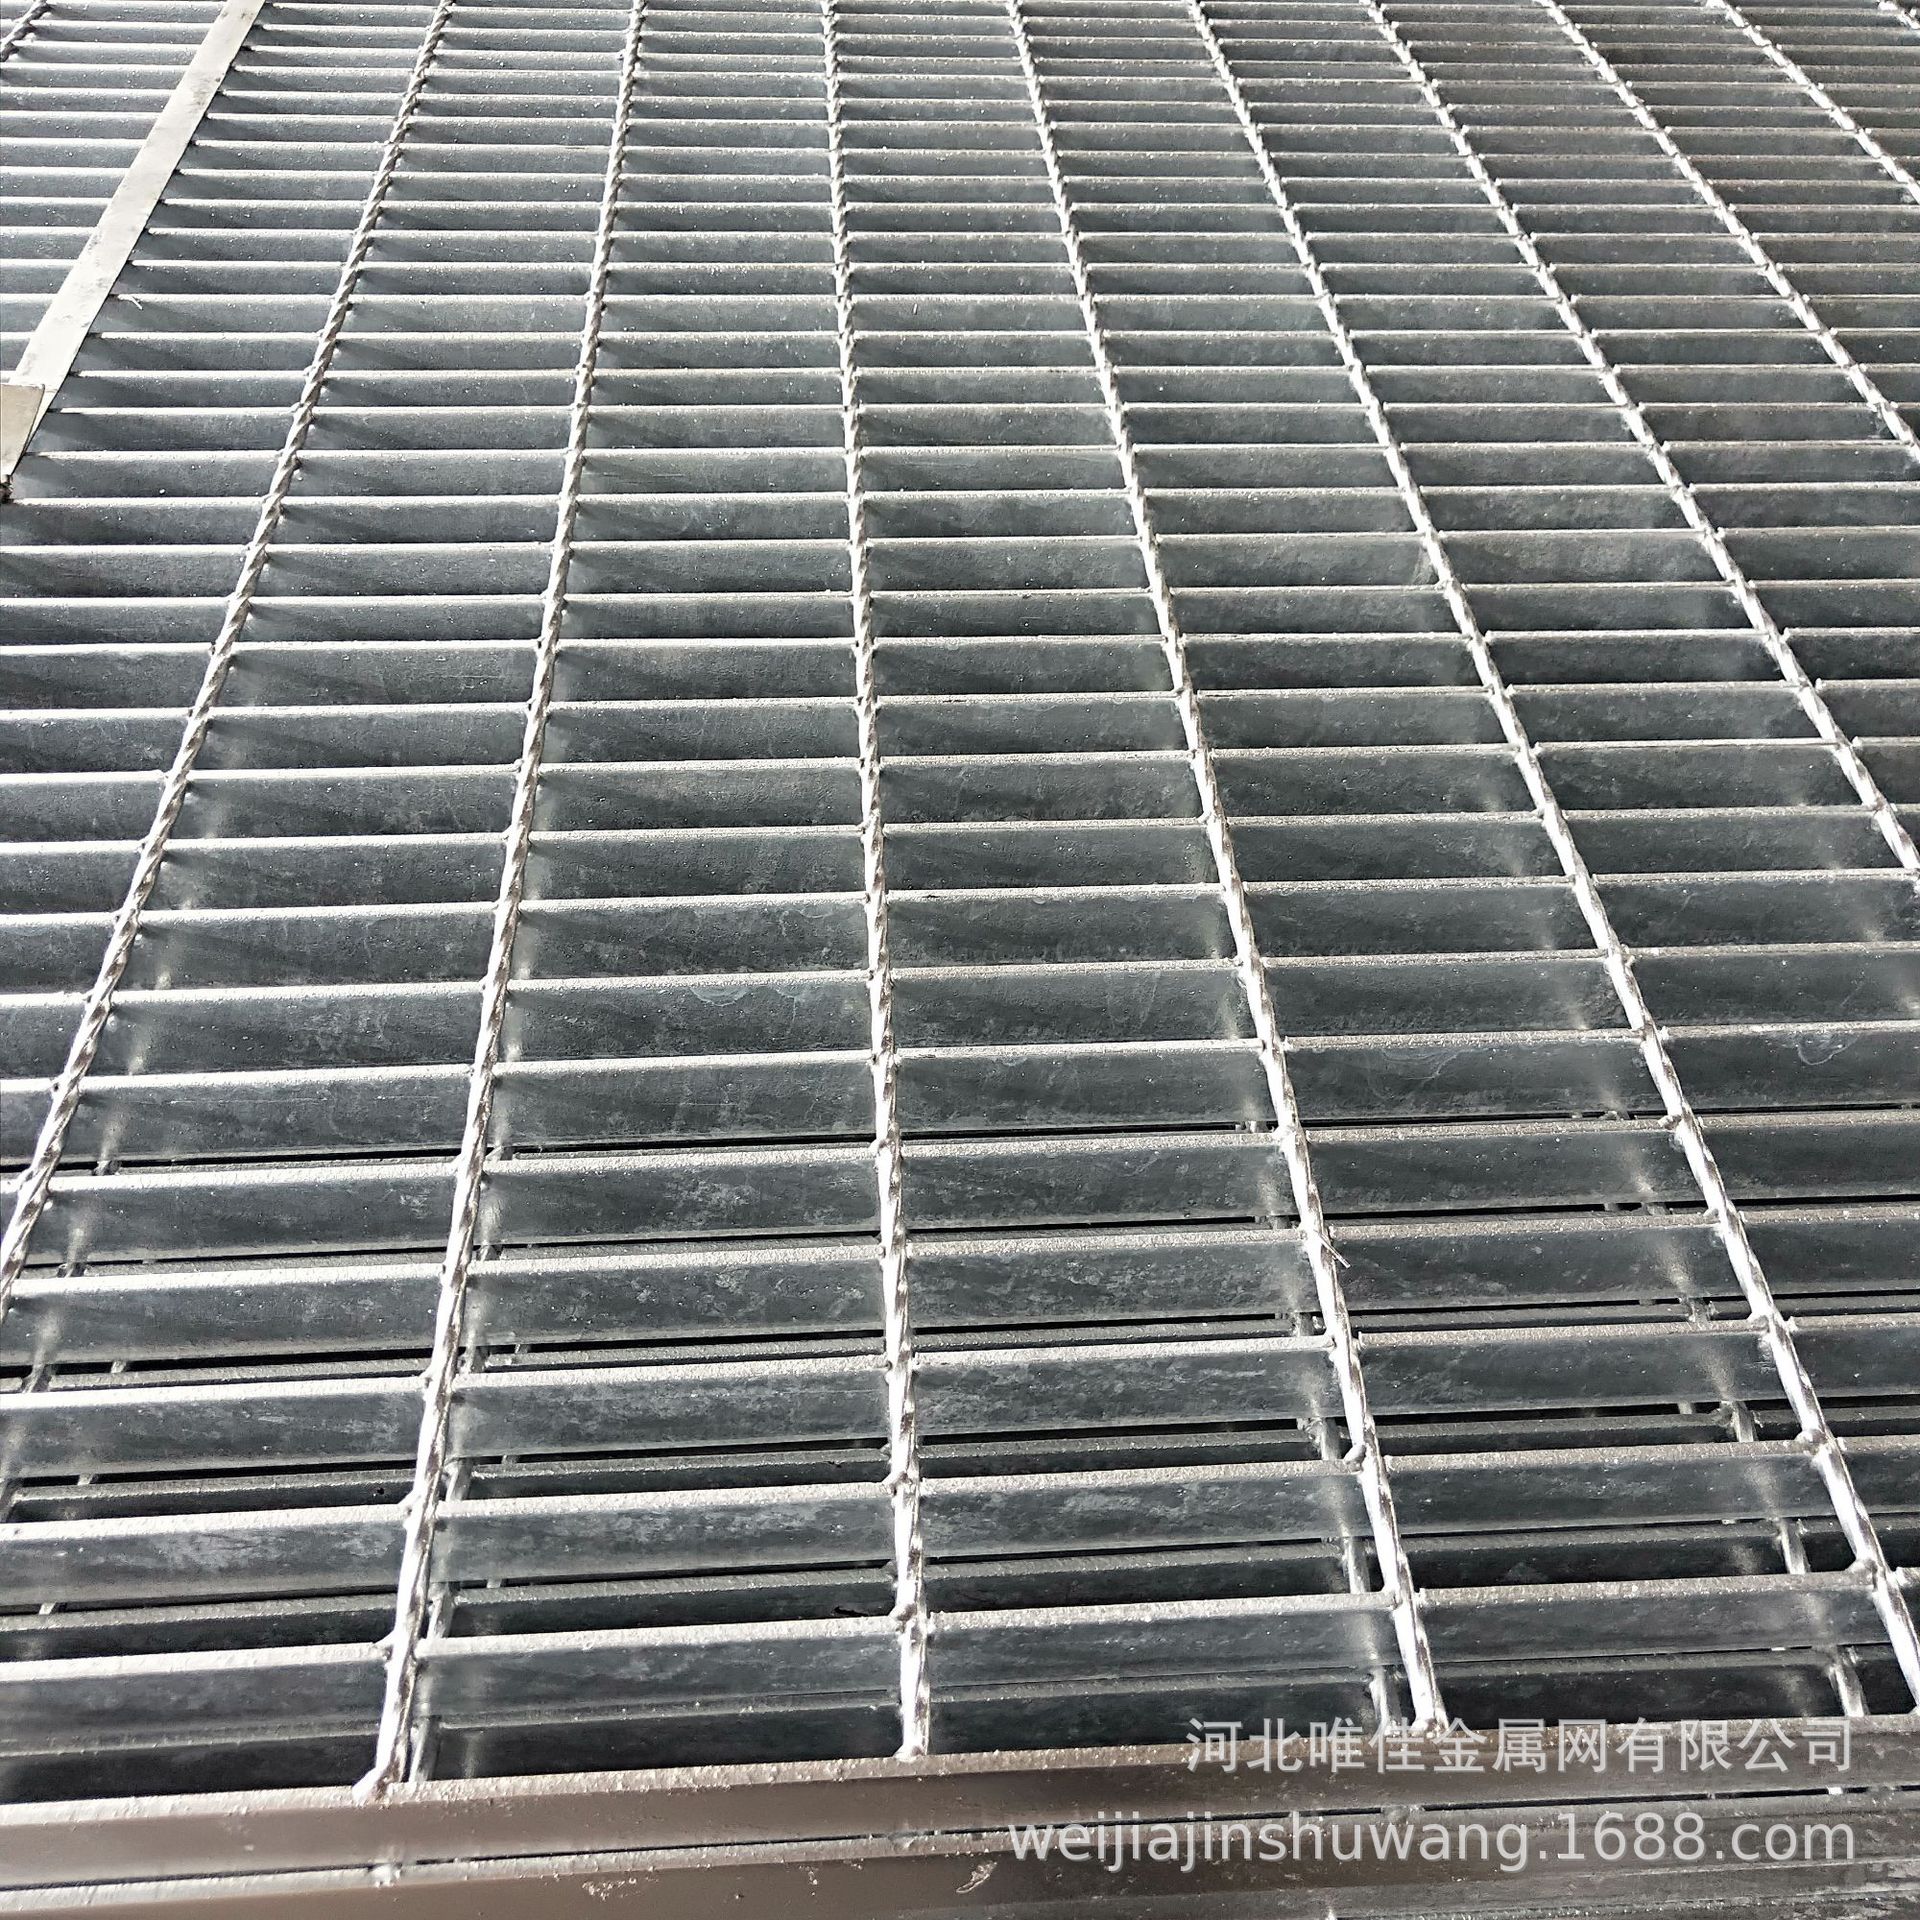 廠家直供鋼格板 鍍鋅鋼格柵 排水溝蓋板 平臺鋼格板規格齊全